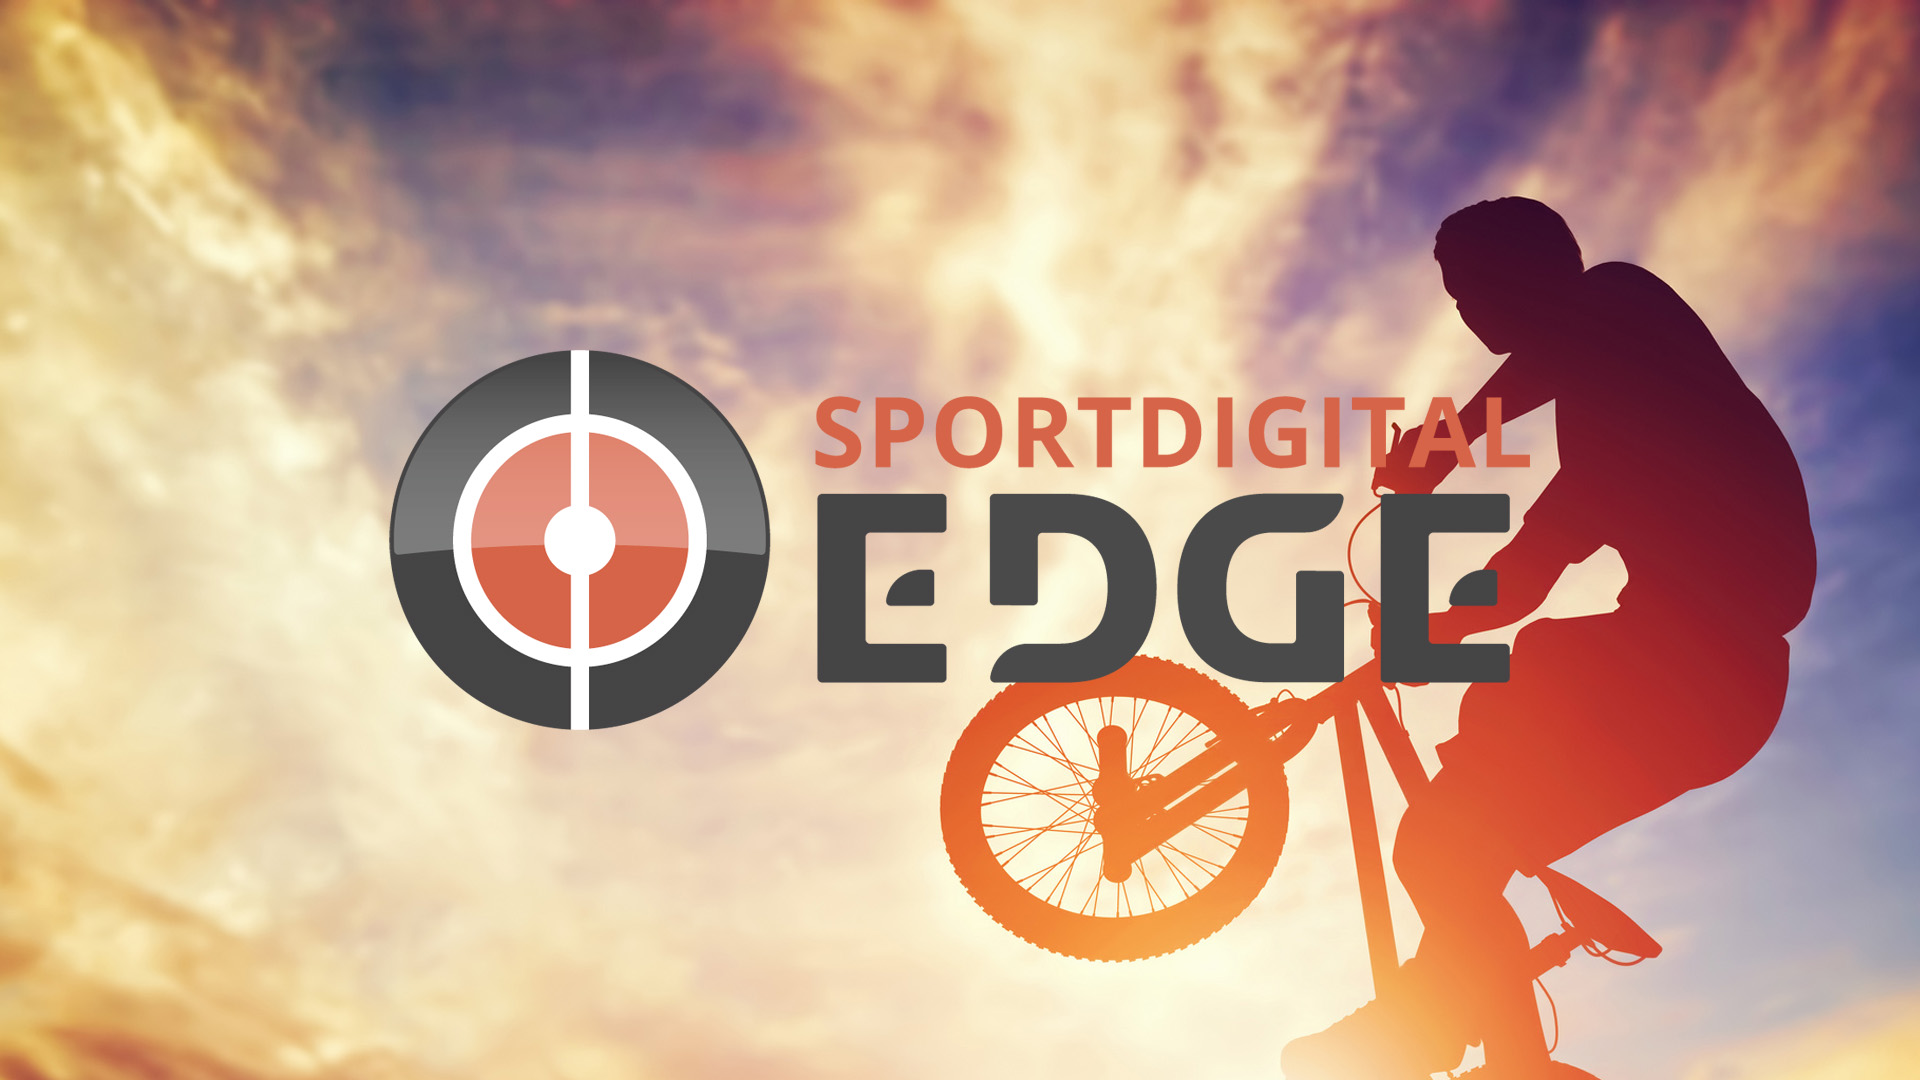 Aus “EDGEsport” wird “Sportdigital EDGE” – der beliebte Fun- und Actionsportsender schlüpft unter das Dach von Sportdigital